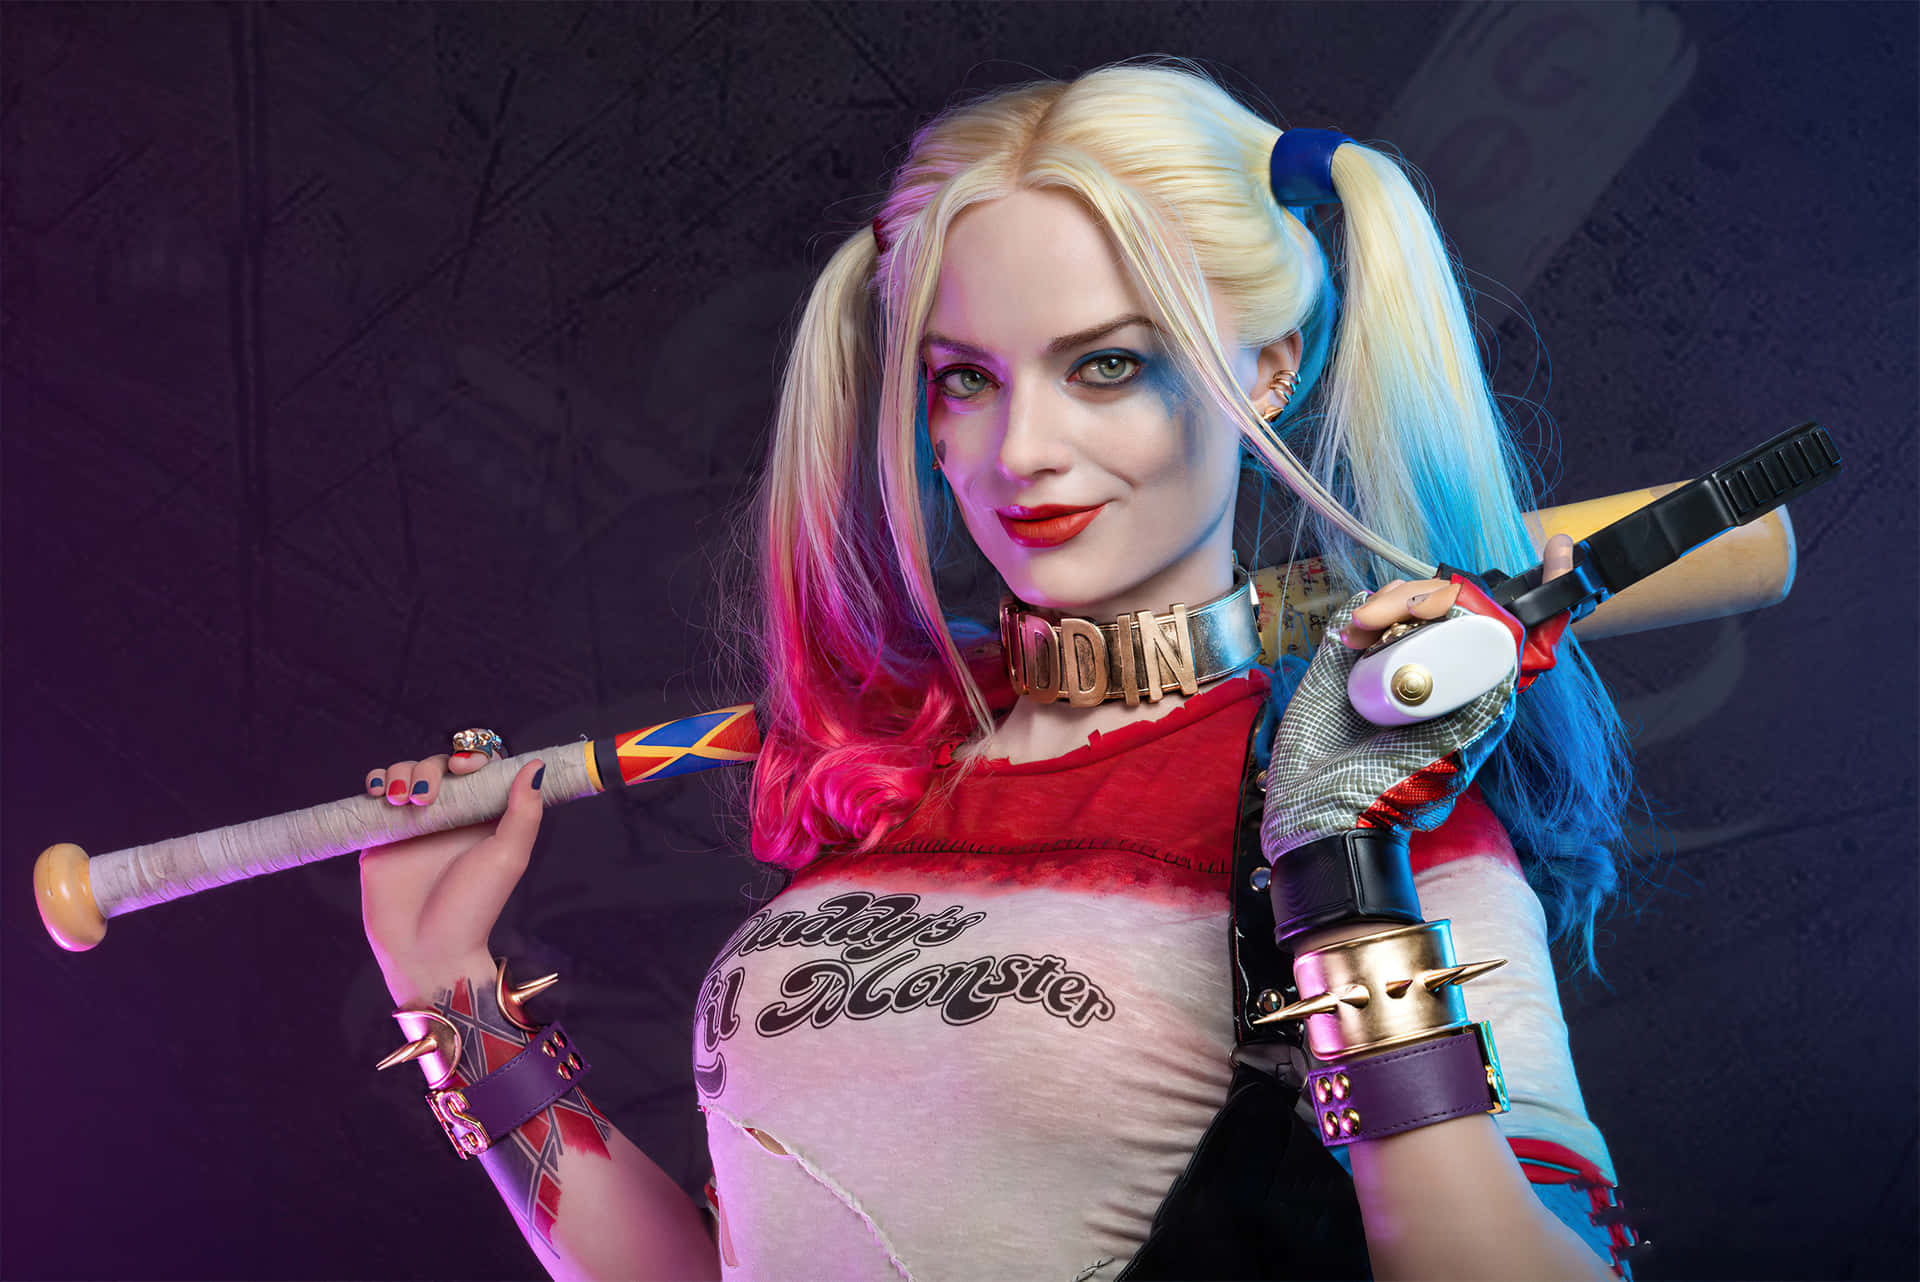 Harley Quinn and The Joker. by Jordee11 on DeviantArt